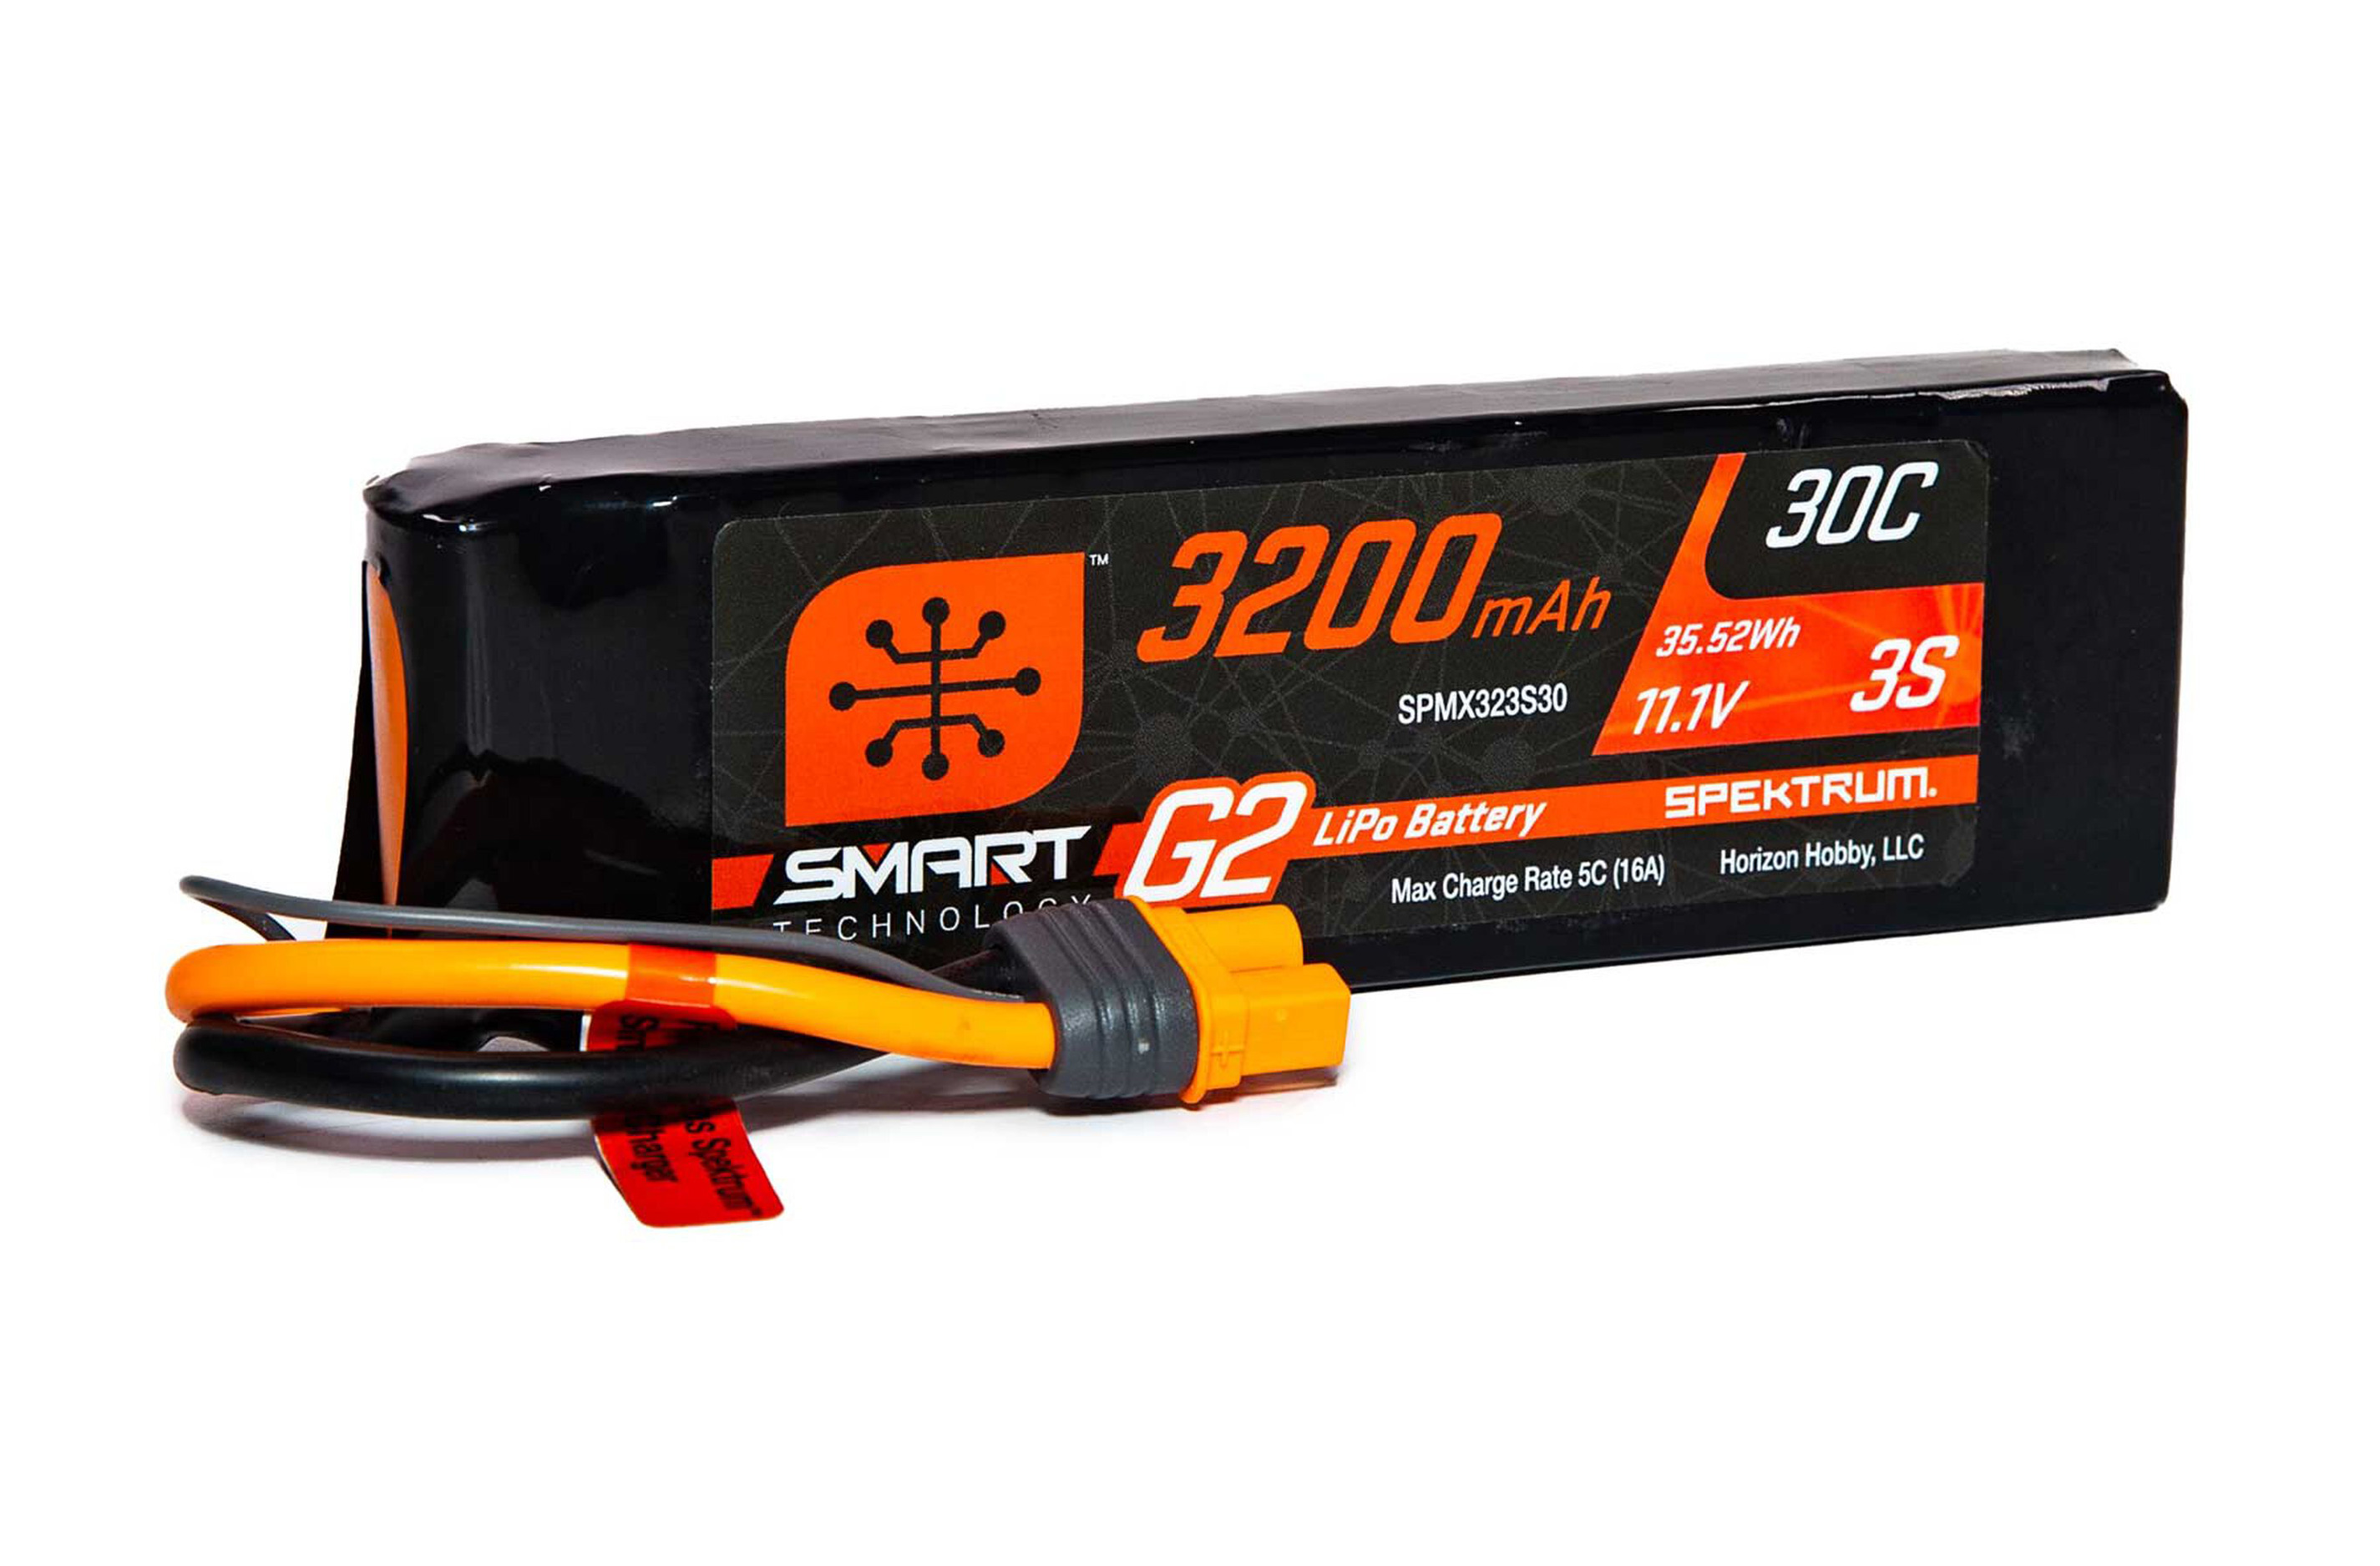 SPMX323S30 Spektrum 11.1V 3200mAh 3S 30C Smart G2 LiPo Batterie IC3